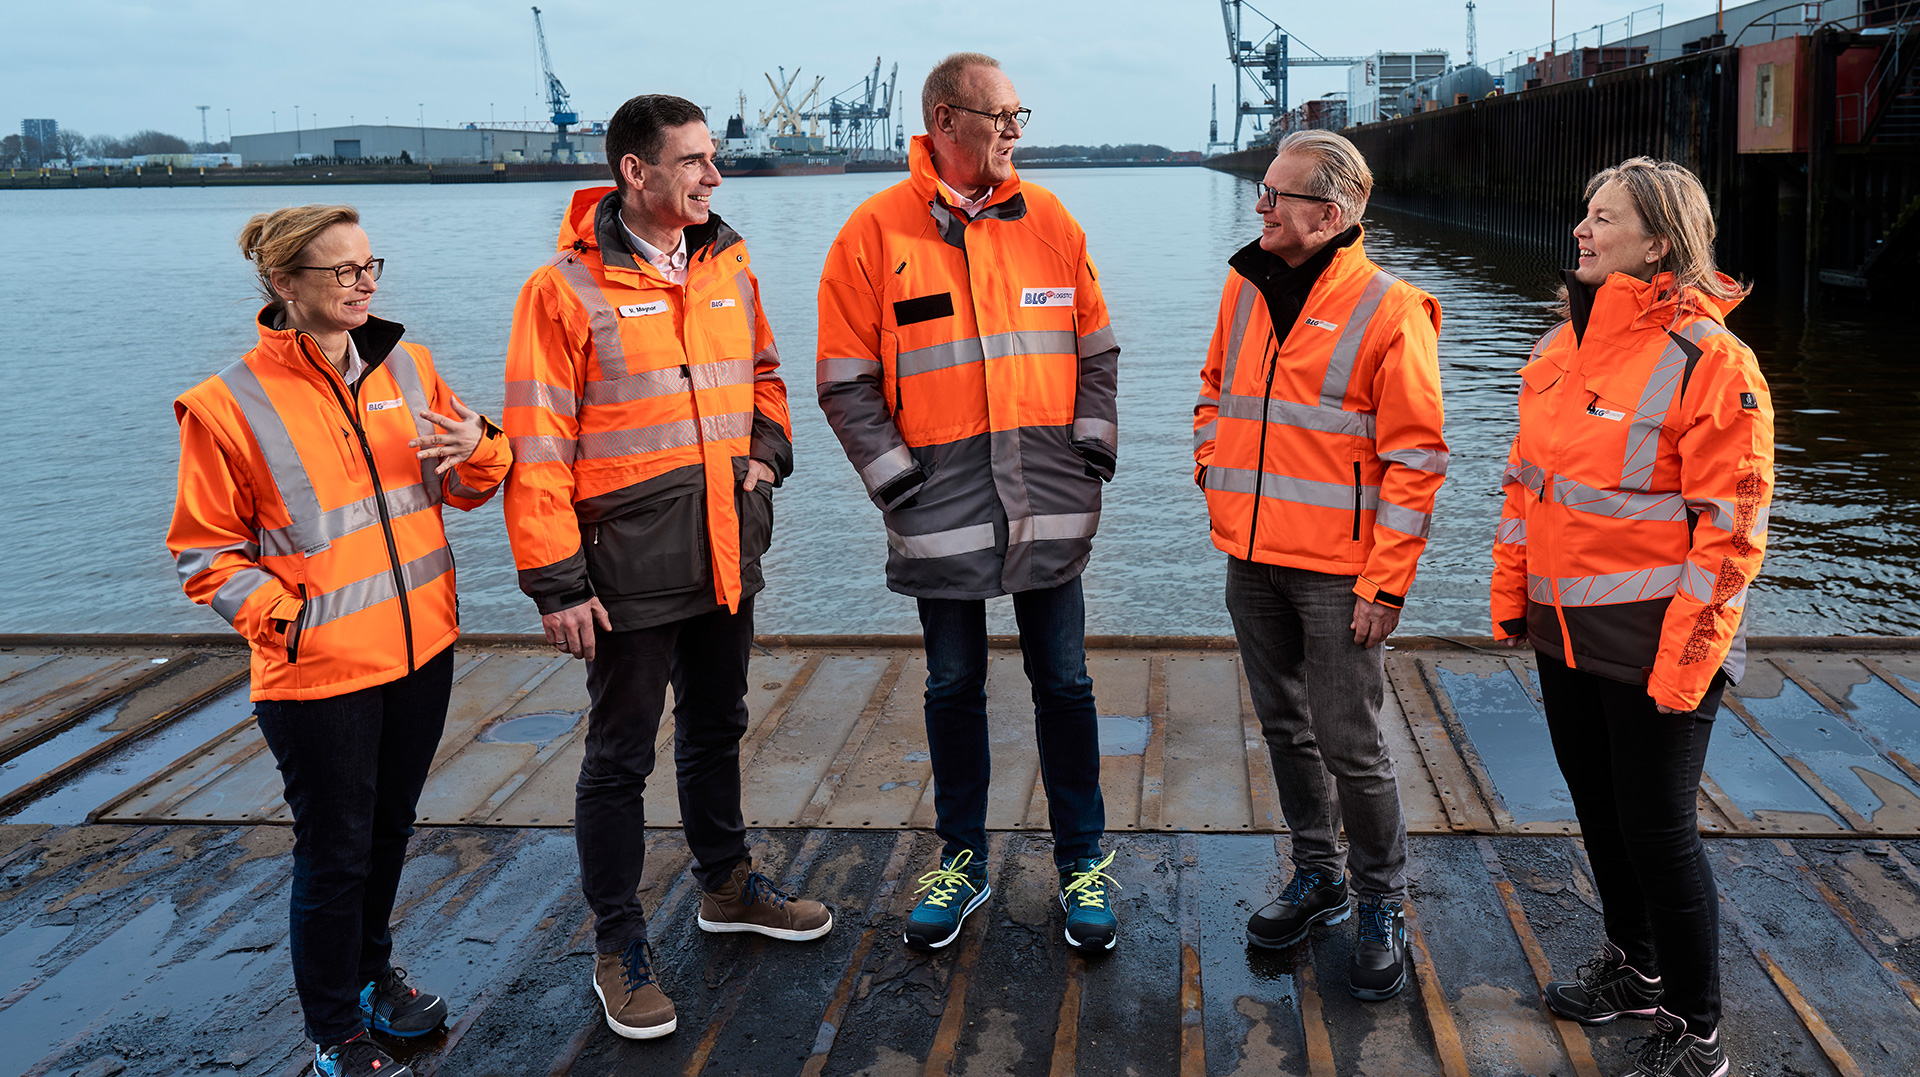 Die Mitglieder des Vorstands in orangen Schutzjacken am Hafen (Foto)